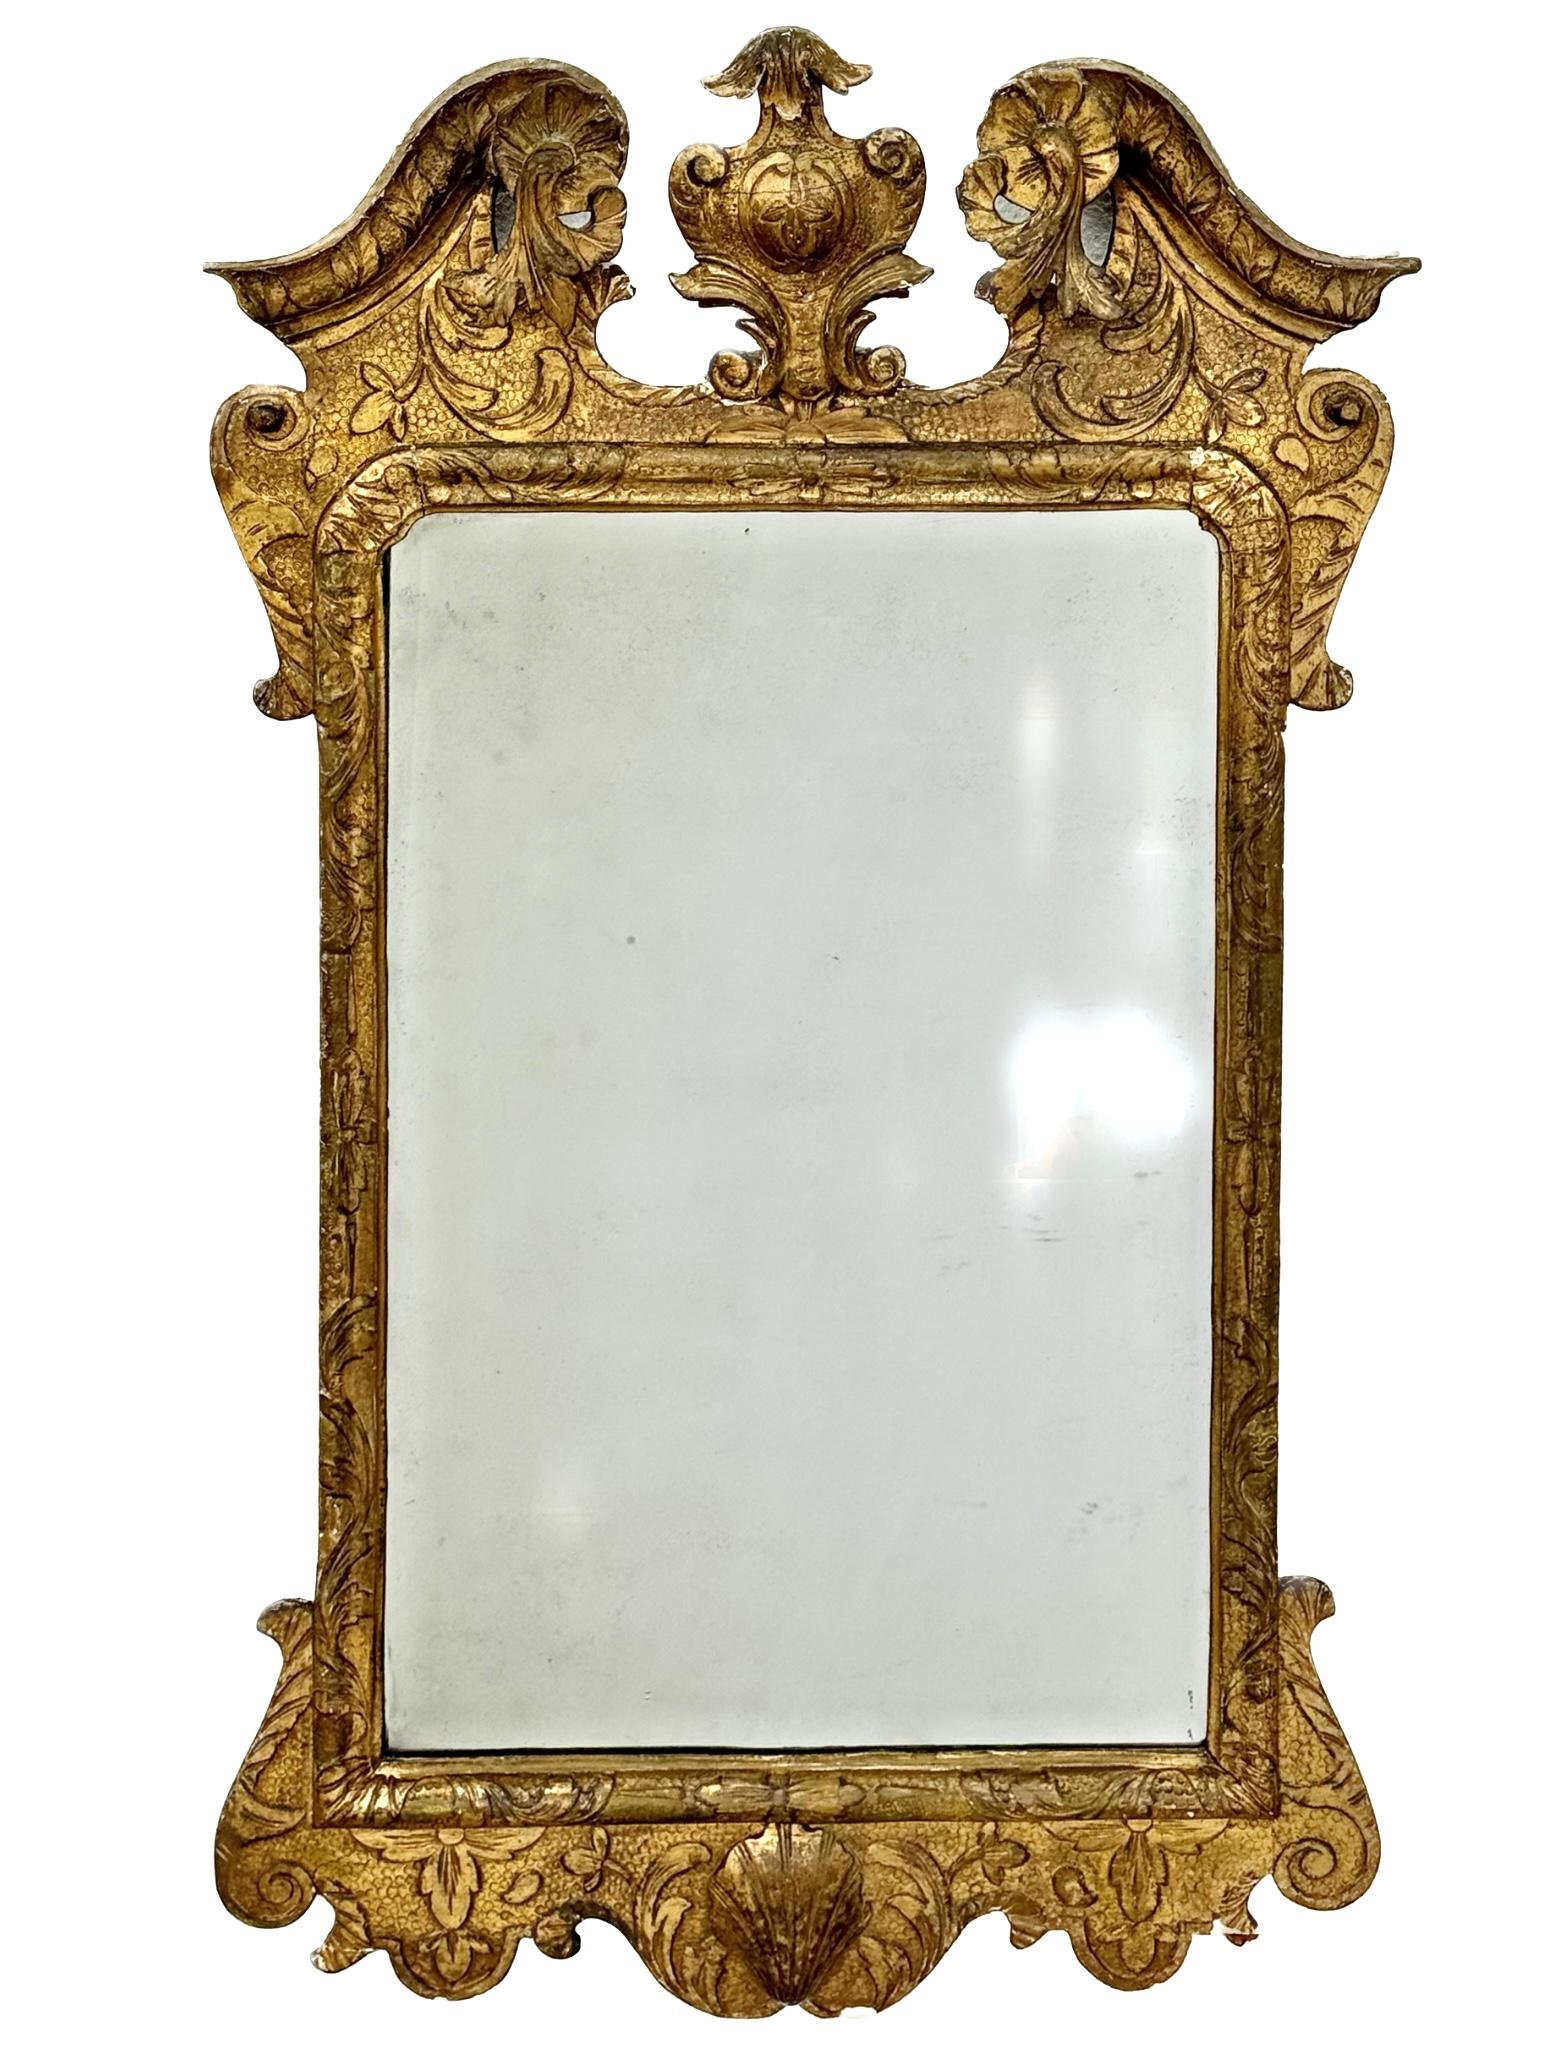 Miroir en bois doré du XVIIIe siècle de George II, aux bords biseautés et monté dans un cadre doré. Sculptée de feuilles d'acanthe en volutes sur un fond tacheté ou sablé. Bordure géométrique sculptée, surmontée d'un fronton en arc brisé sculpté